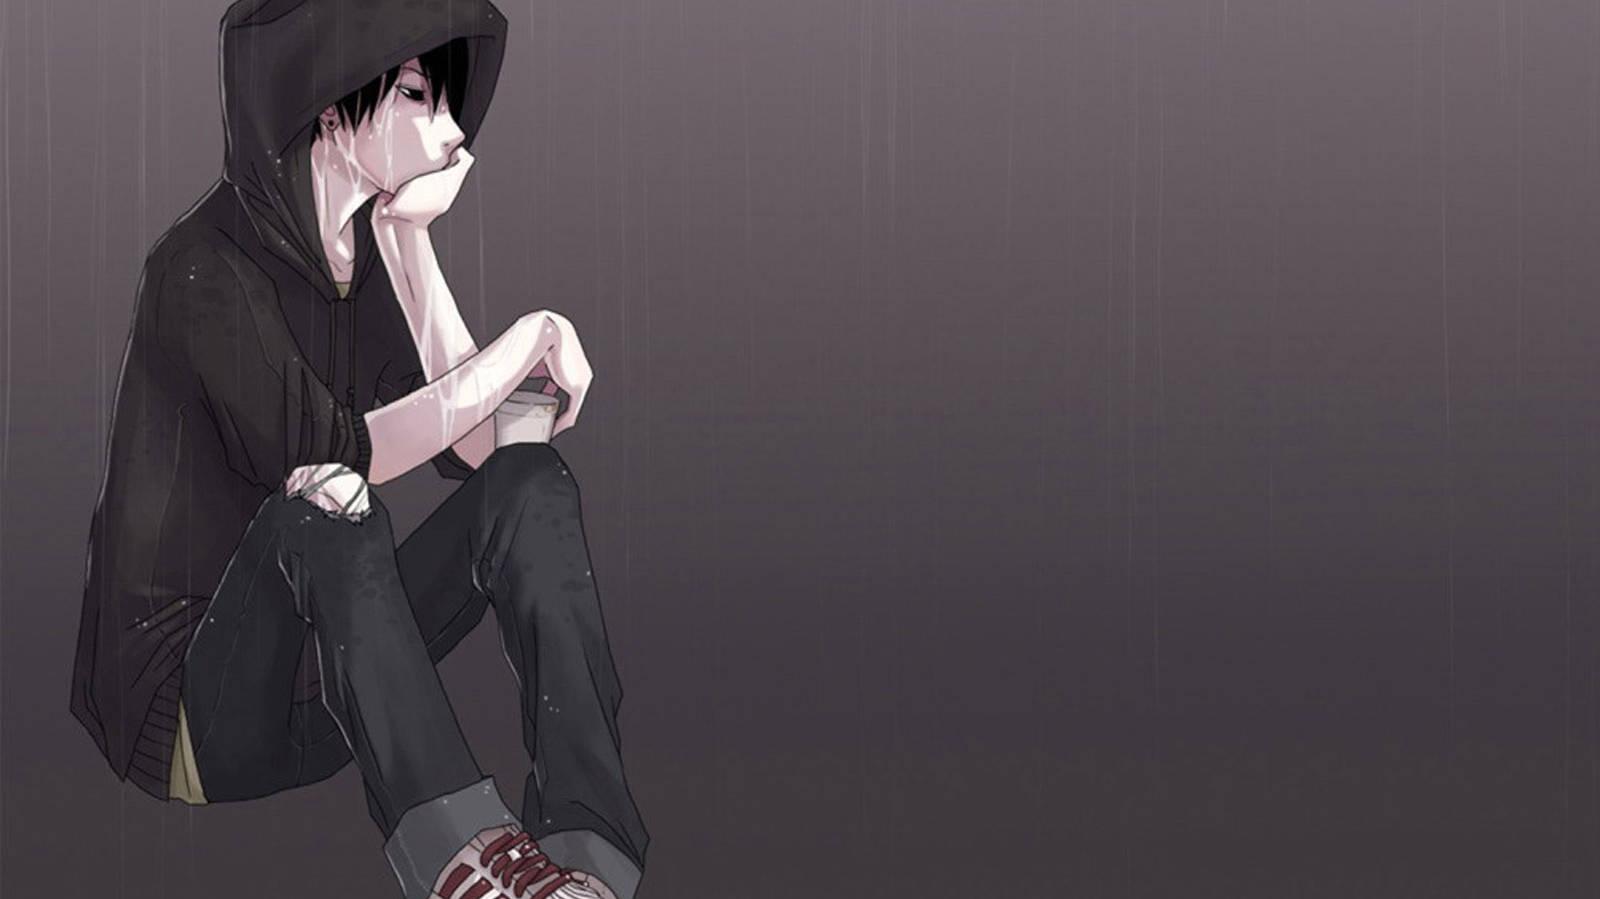  Sad Boy Anime Wallpapers